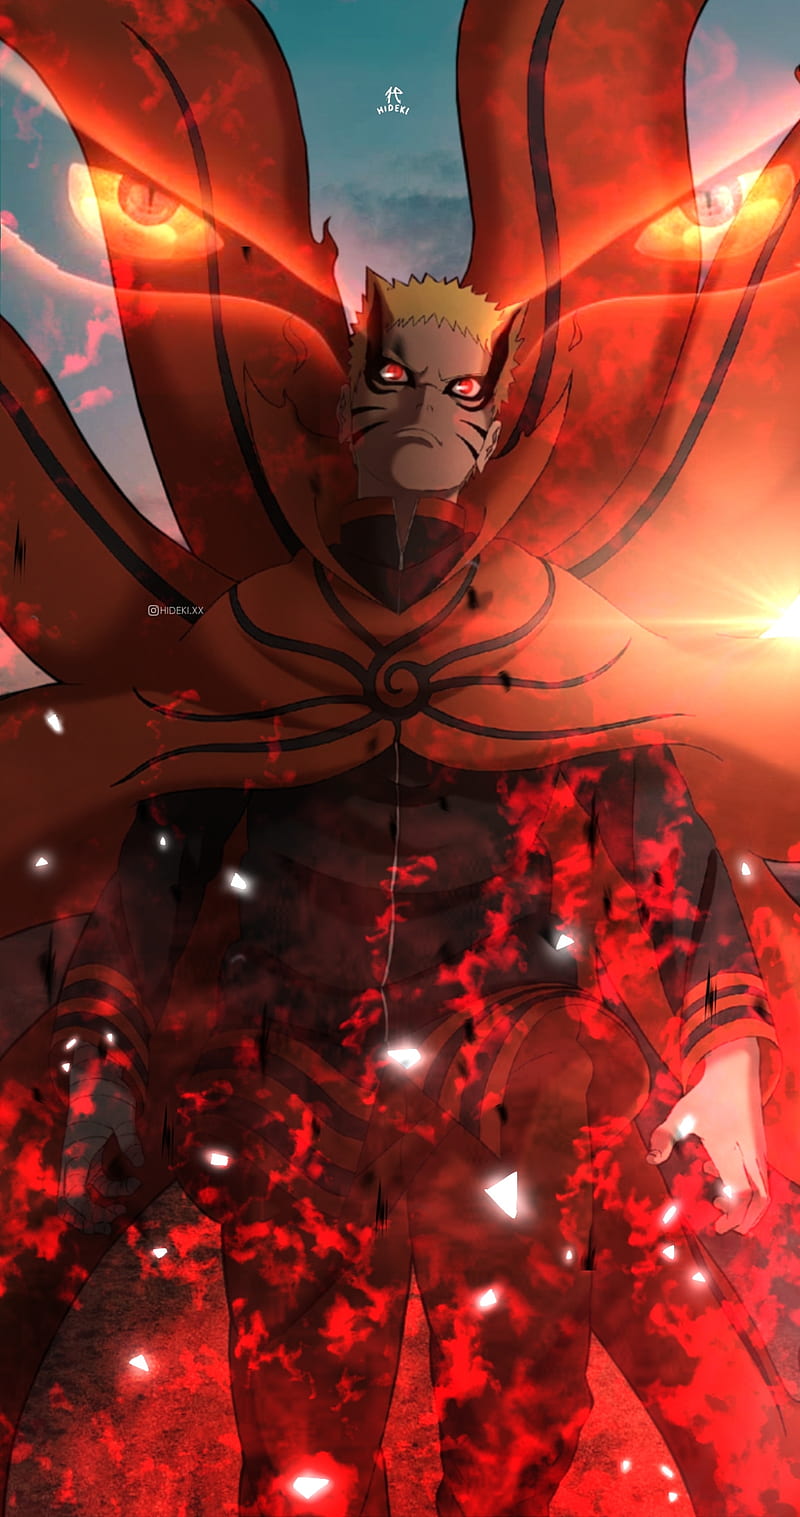 Mode baryon Naruto Shippuden sẽ làm cho bạn phải ngẩn ngơ vì sự mạnh mẽ và điều đặc biệt của Naruto. Hãy sẵn sàng để cảm nhận và thưởng thức màn hình tuyệt đẹp này nhé.